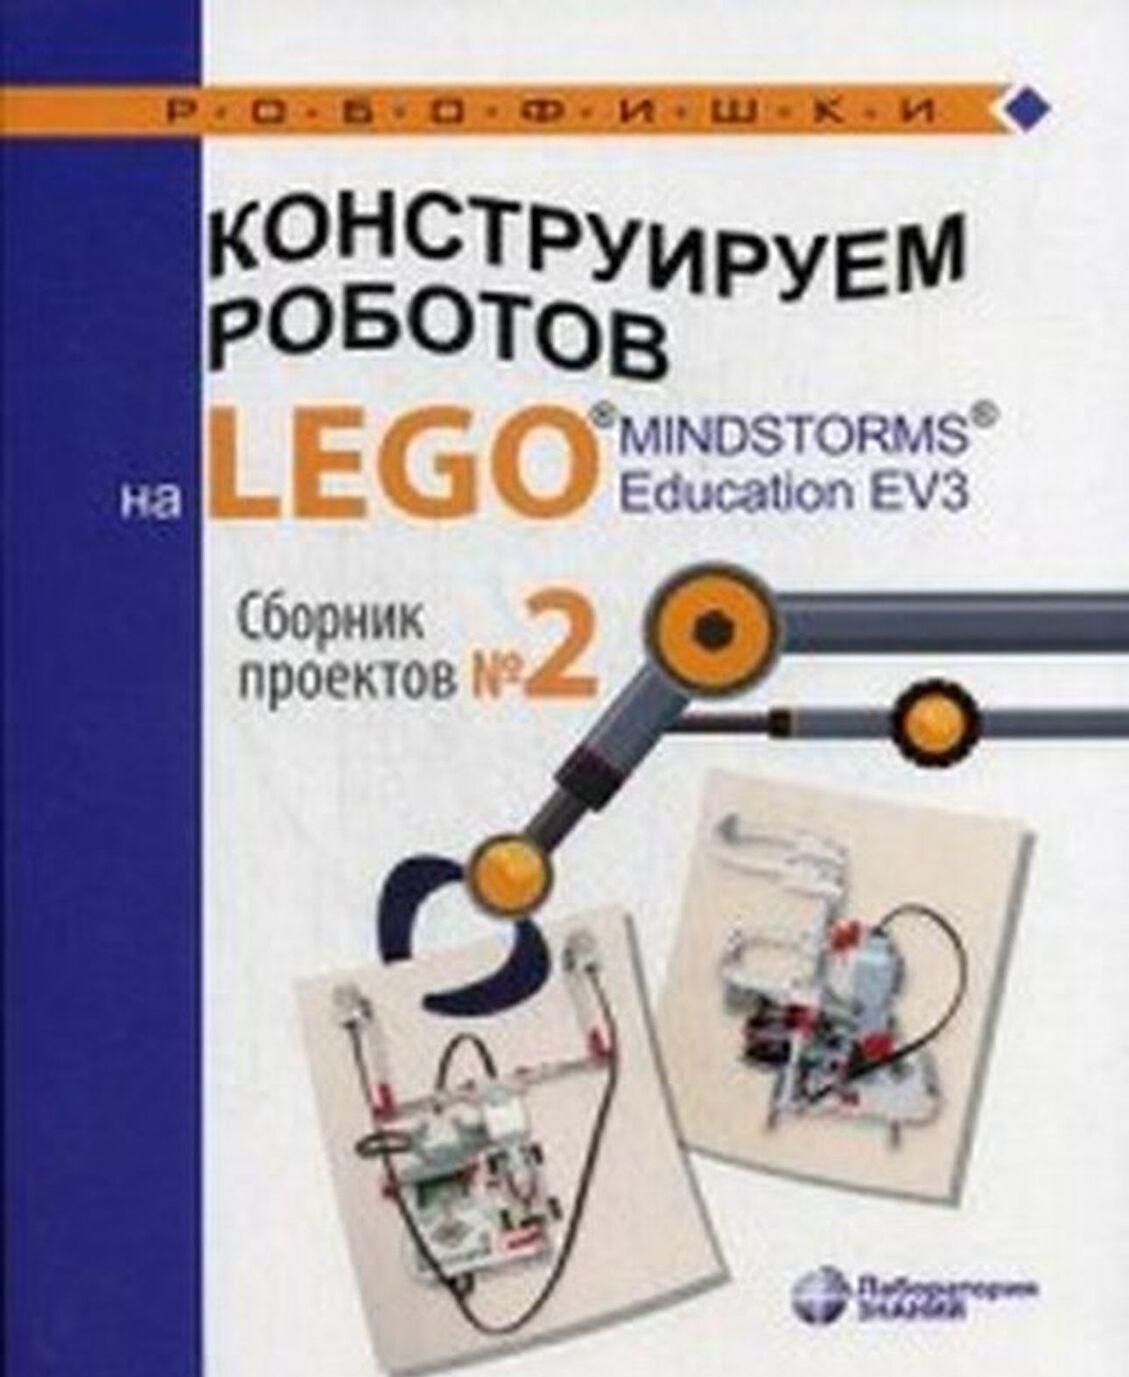 Kniha Конструируем роботов на LEGO® MINDSTORMS® Education EV3. Сборник проектов №2 Ю.А. Серова